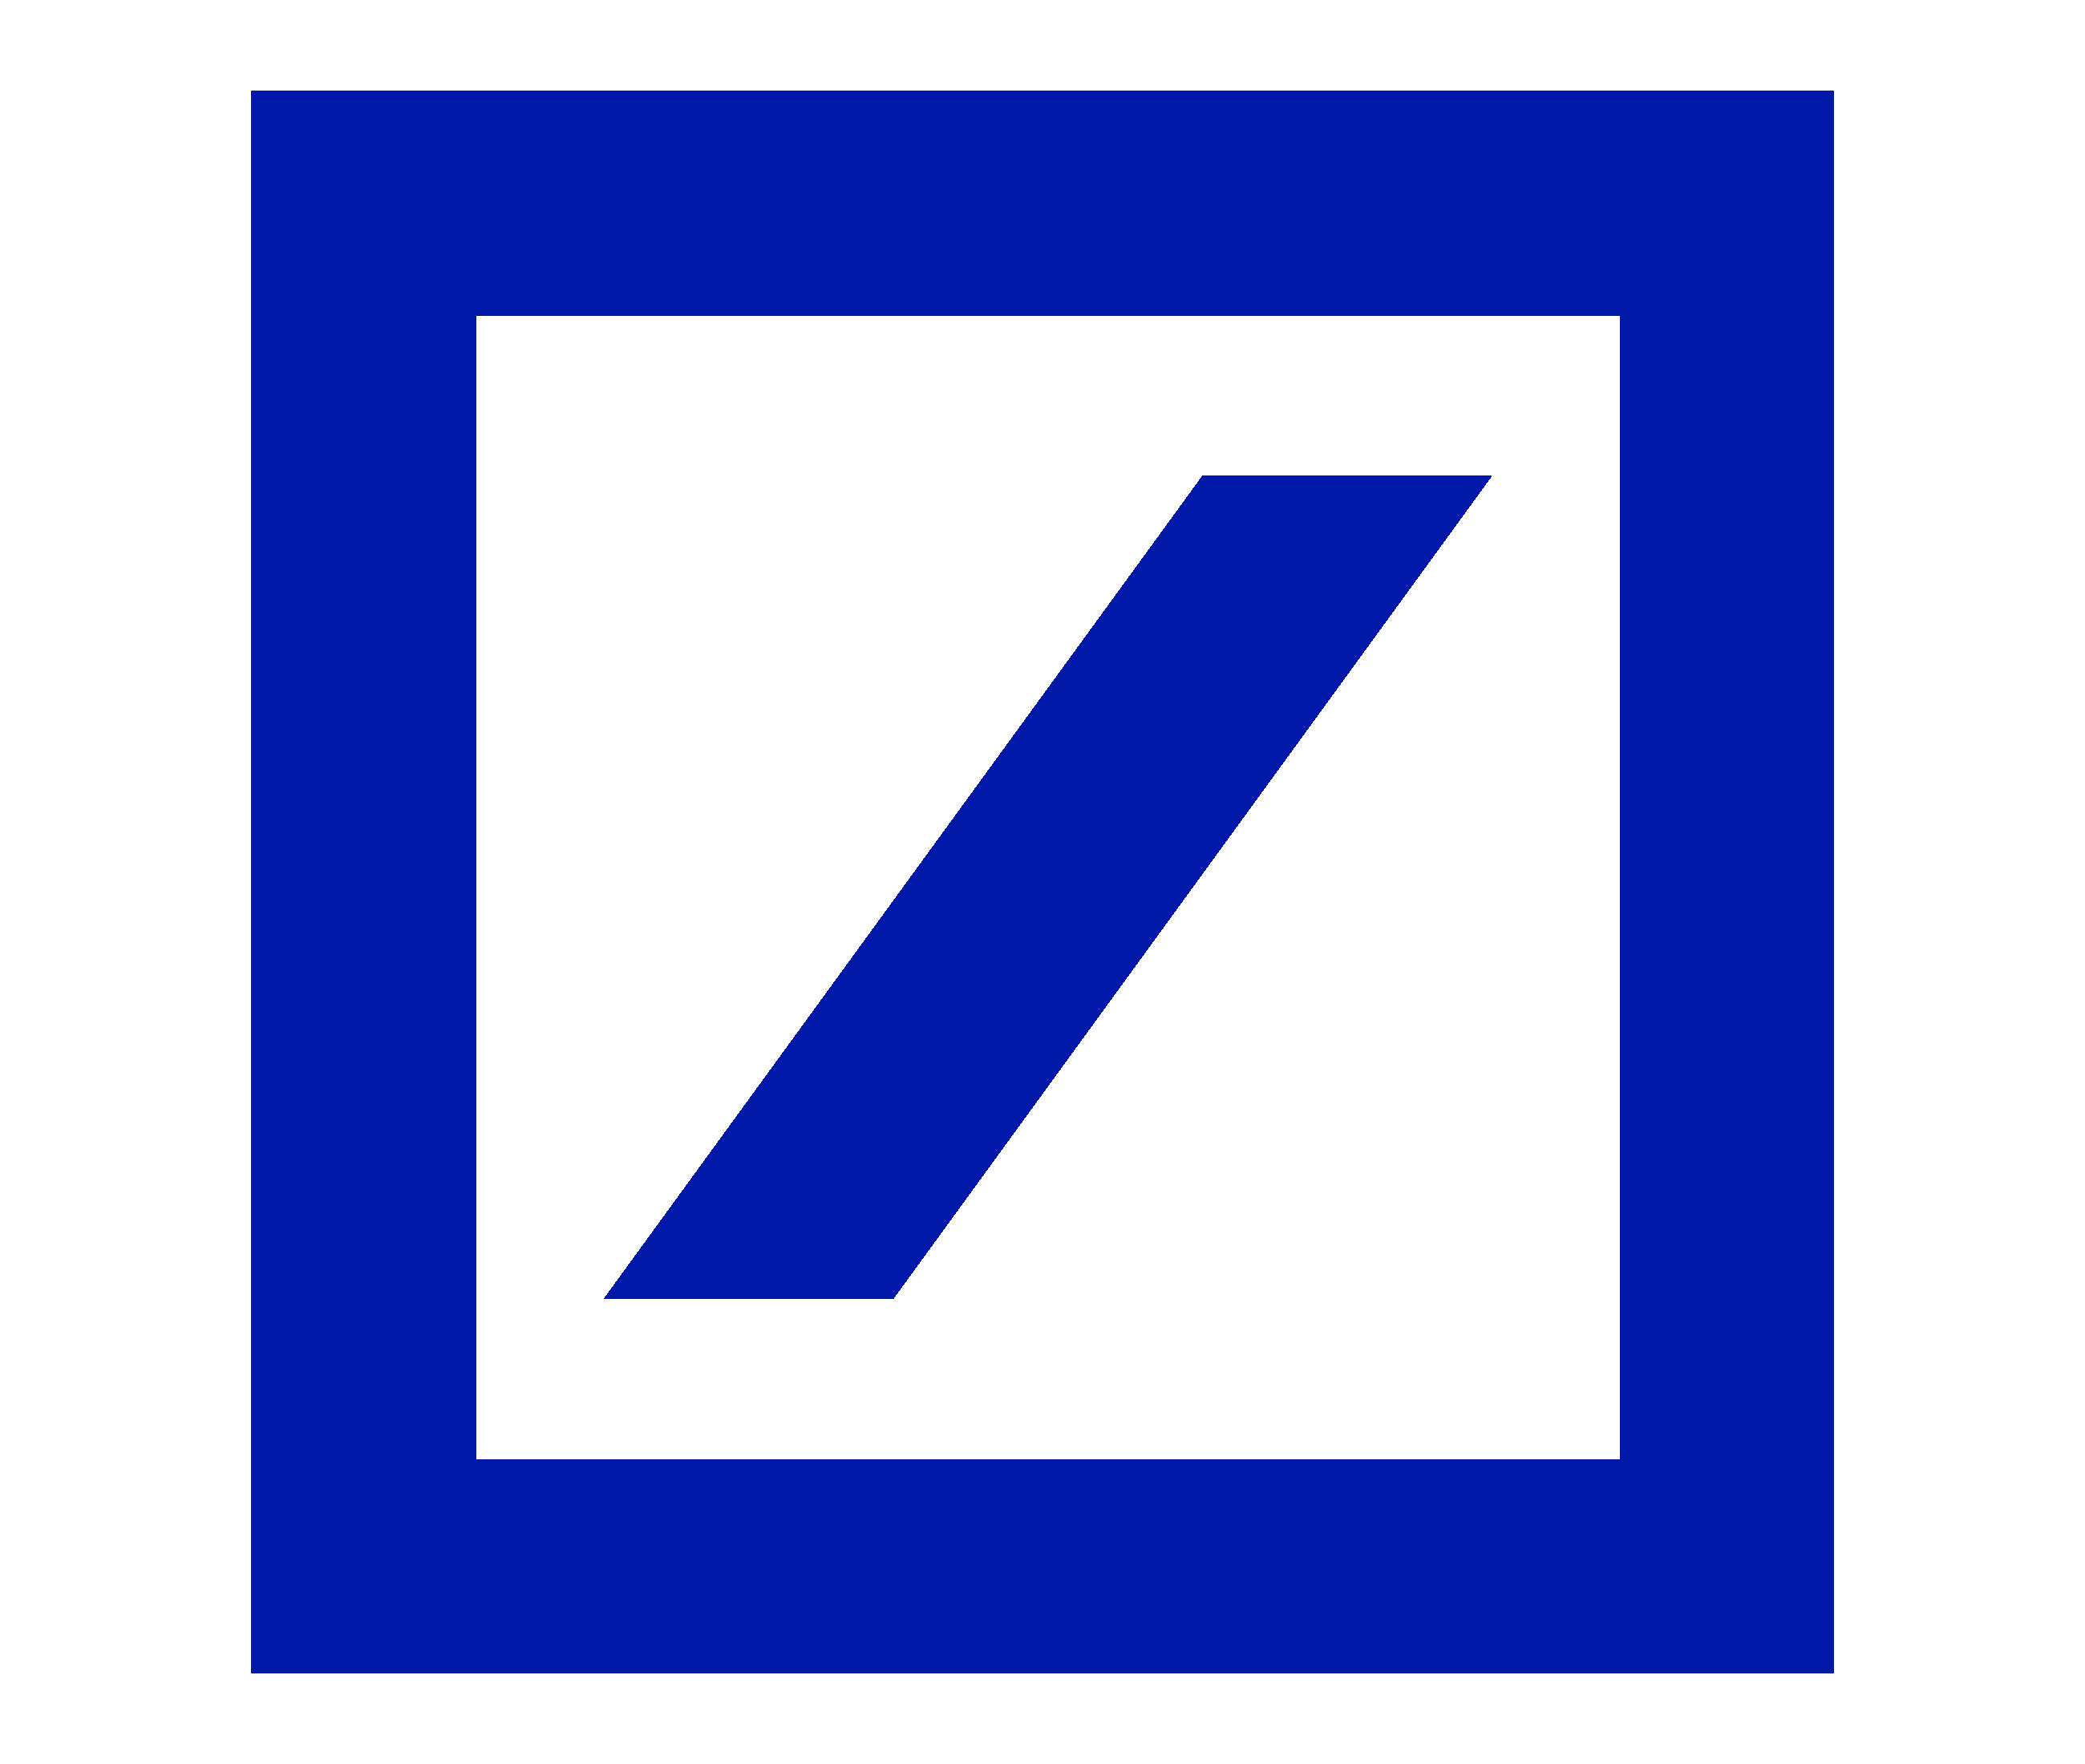 Official Deutsche Bank Logo - Deutsche Bank Logo, Deutsche Bank Symbol, Meaning, History and Evolution